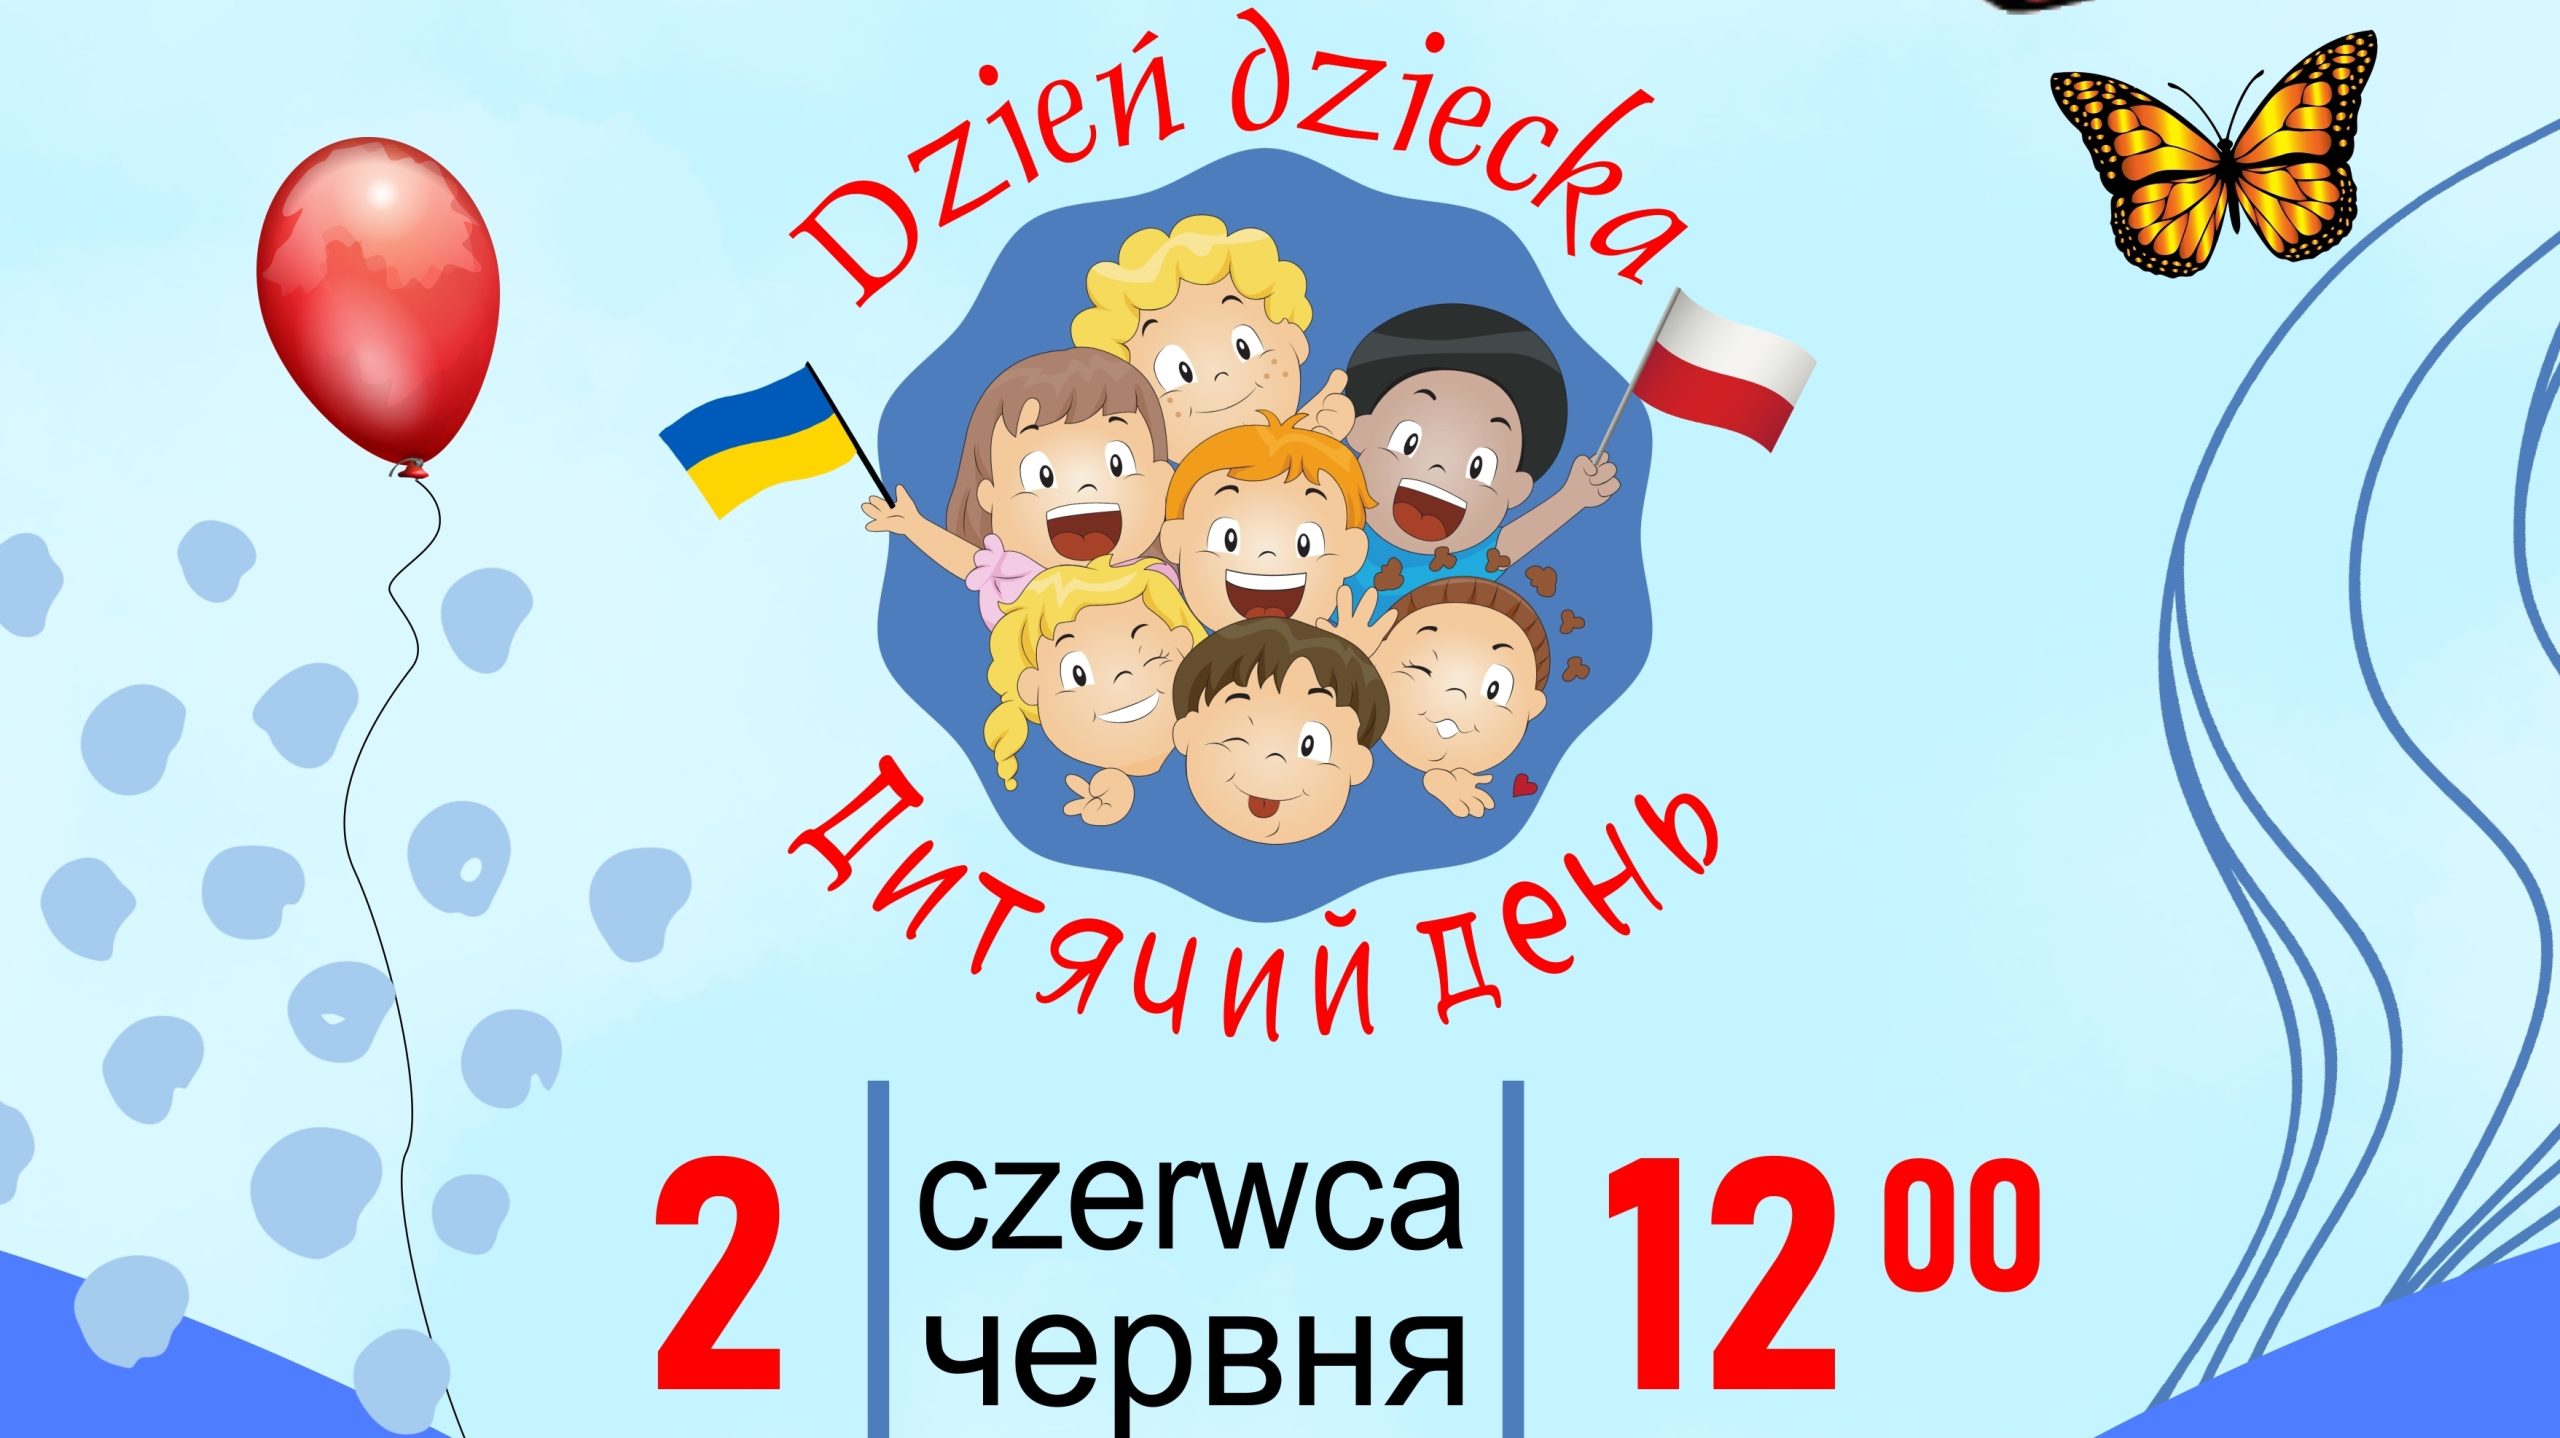 You are currently viewing Zapraszamy na festyn z okazji Dzień Dziecka dzieci polskie i ukraińskie